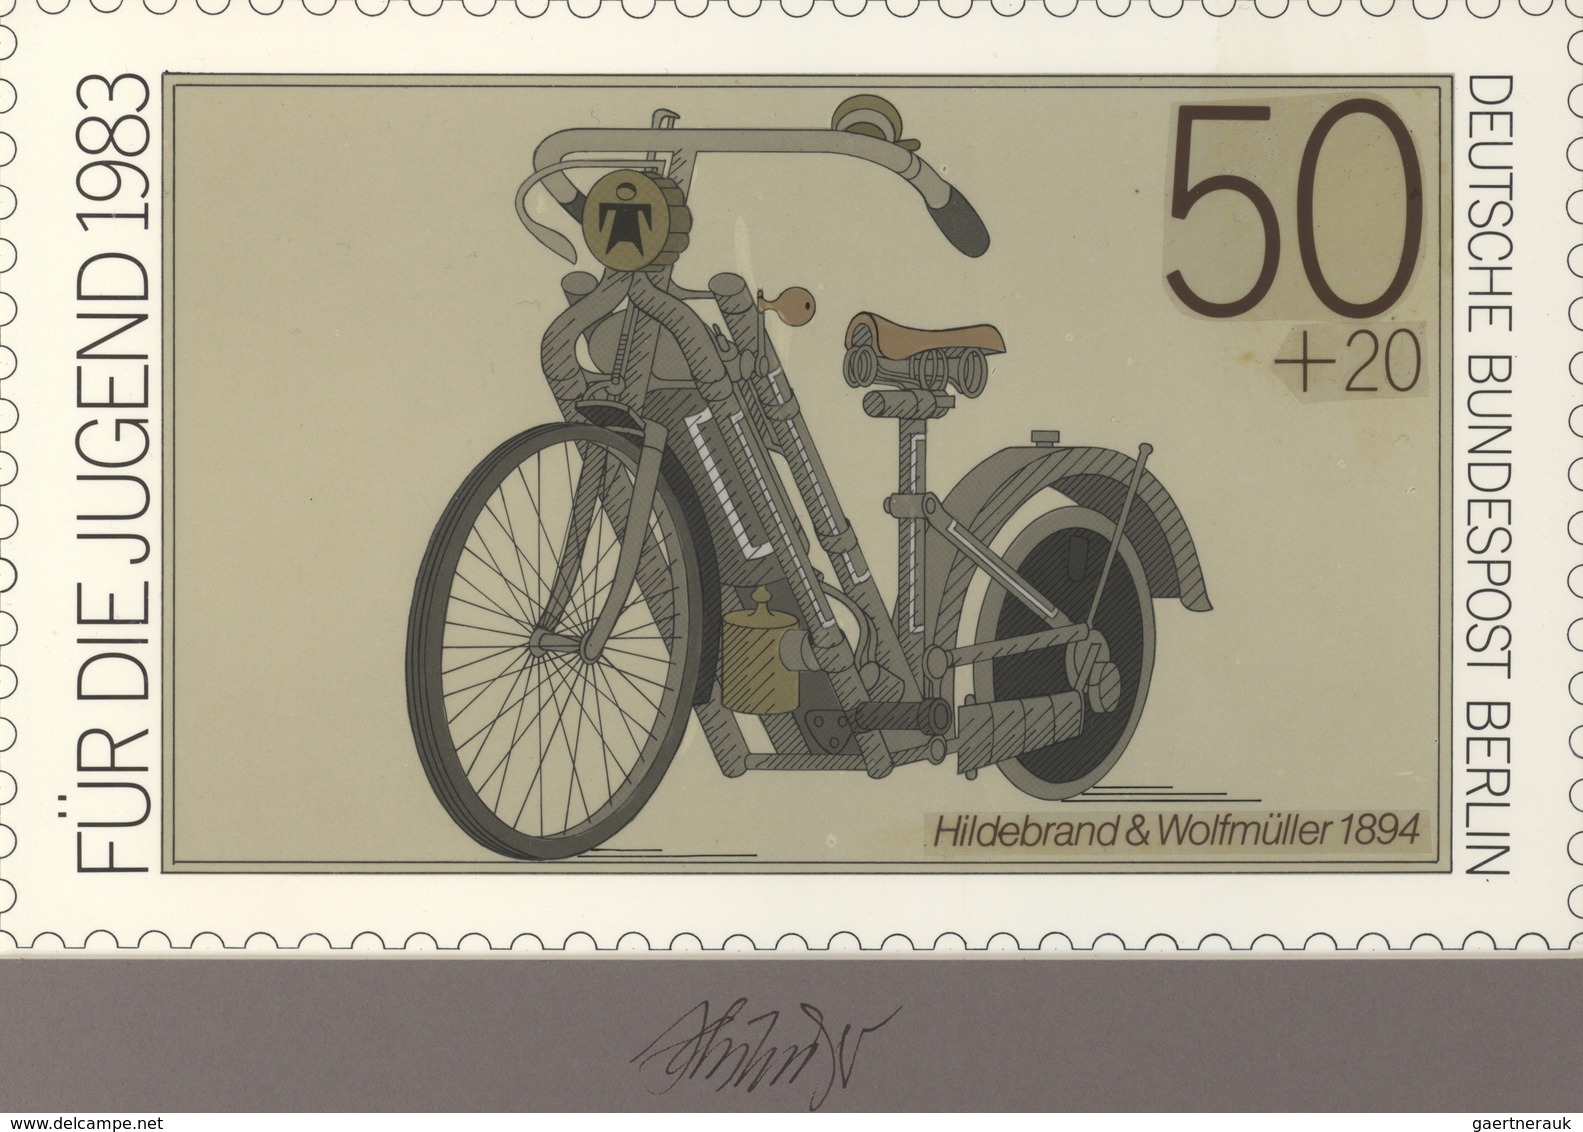 Thematik: Verkehr-Motorrad  / Traffic-motorcycle: 1983, Berlin, Nicht Angenommener Künstlerentwurf ( - Motorräder